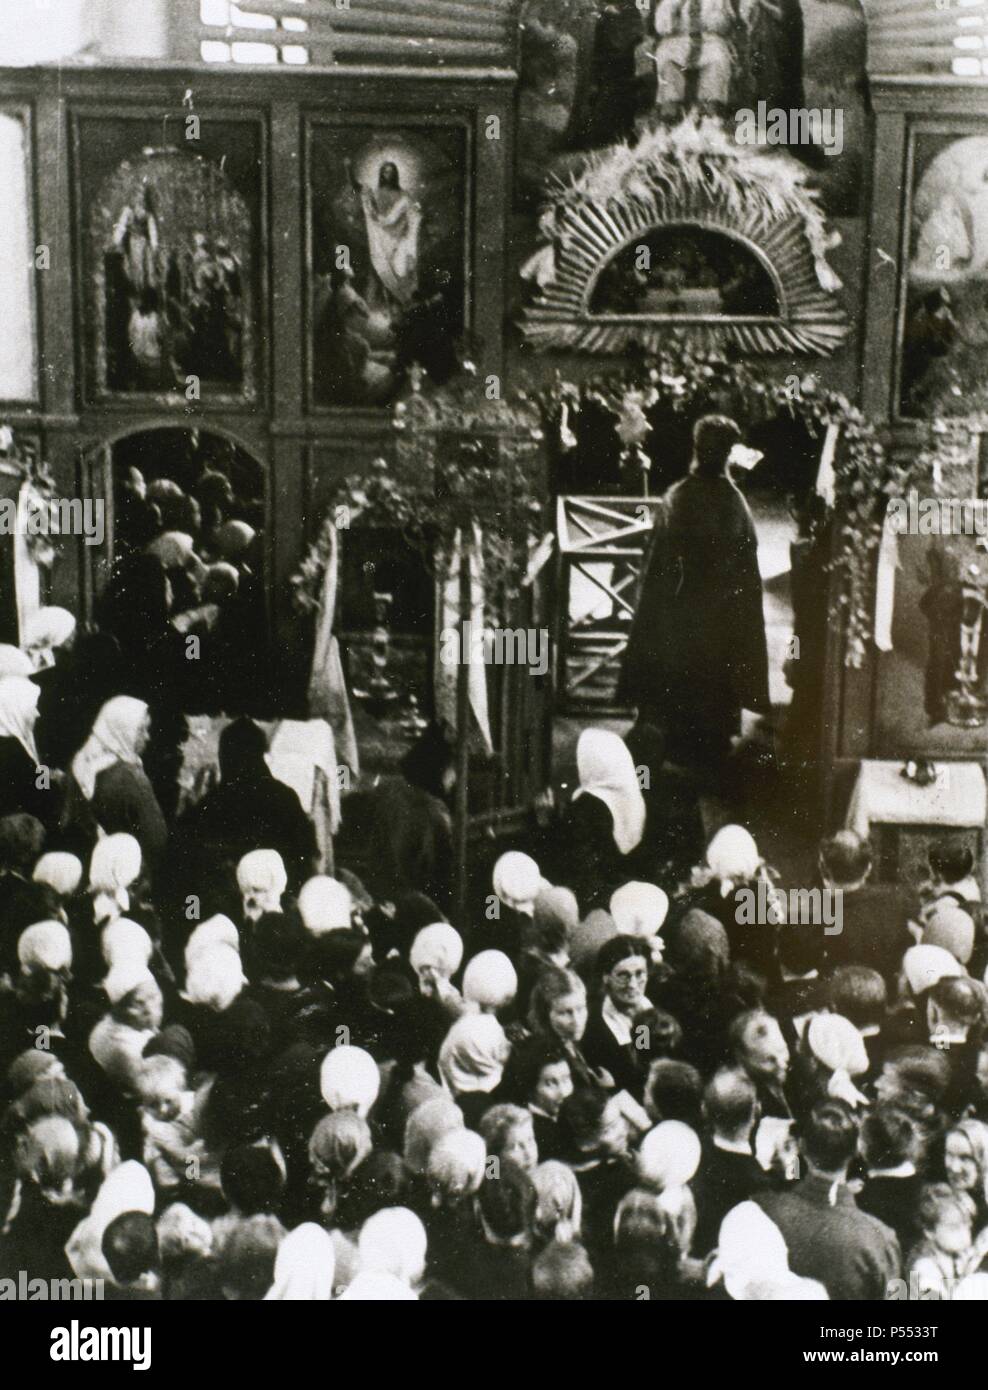 SEGUNDA GUERRA MUNDIAL. Celebración de un acto religioso en territorio ucraniano durante la dominación alemana y bajo el acoso de la artillería soviética. Stock Photo